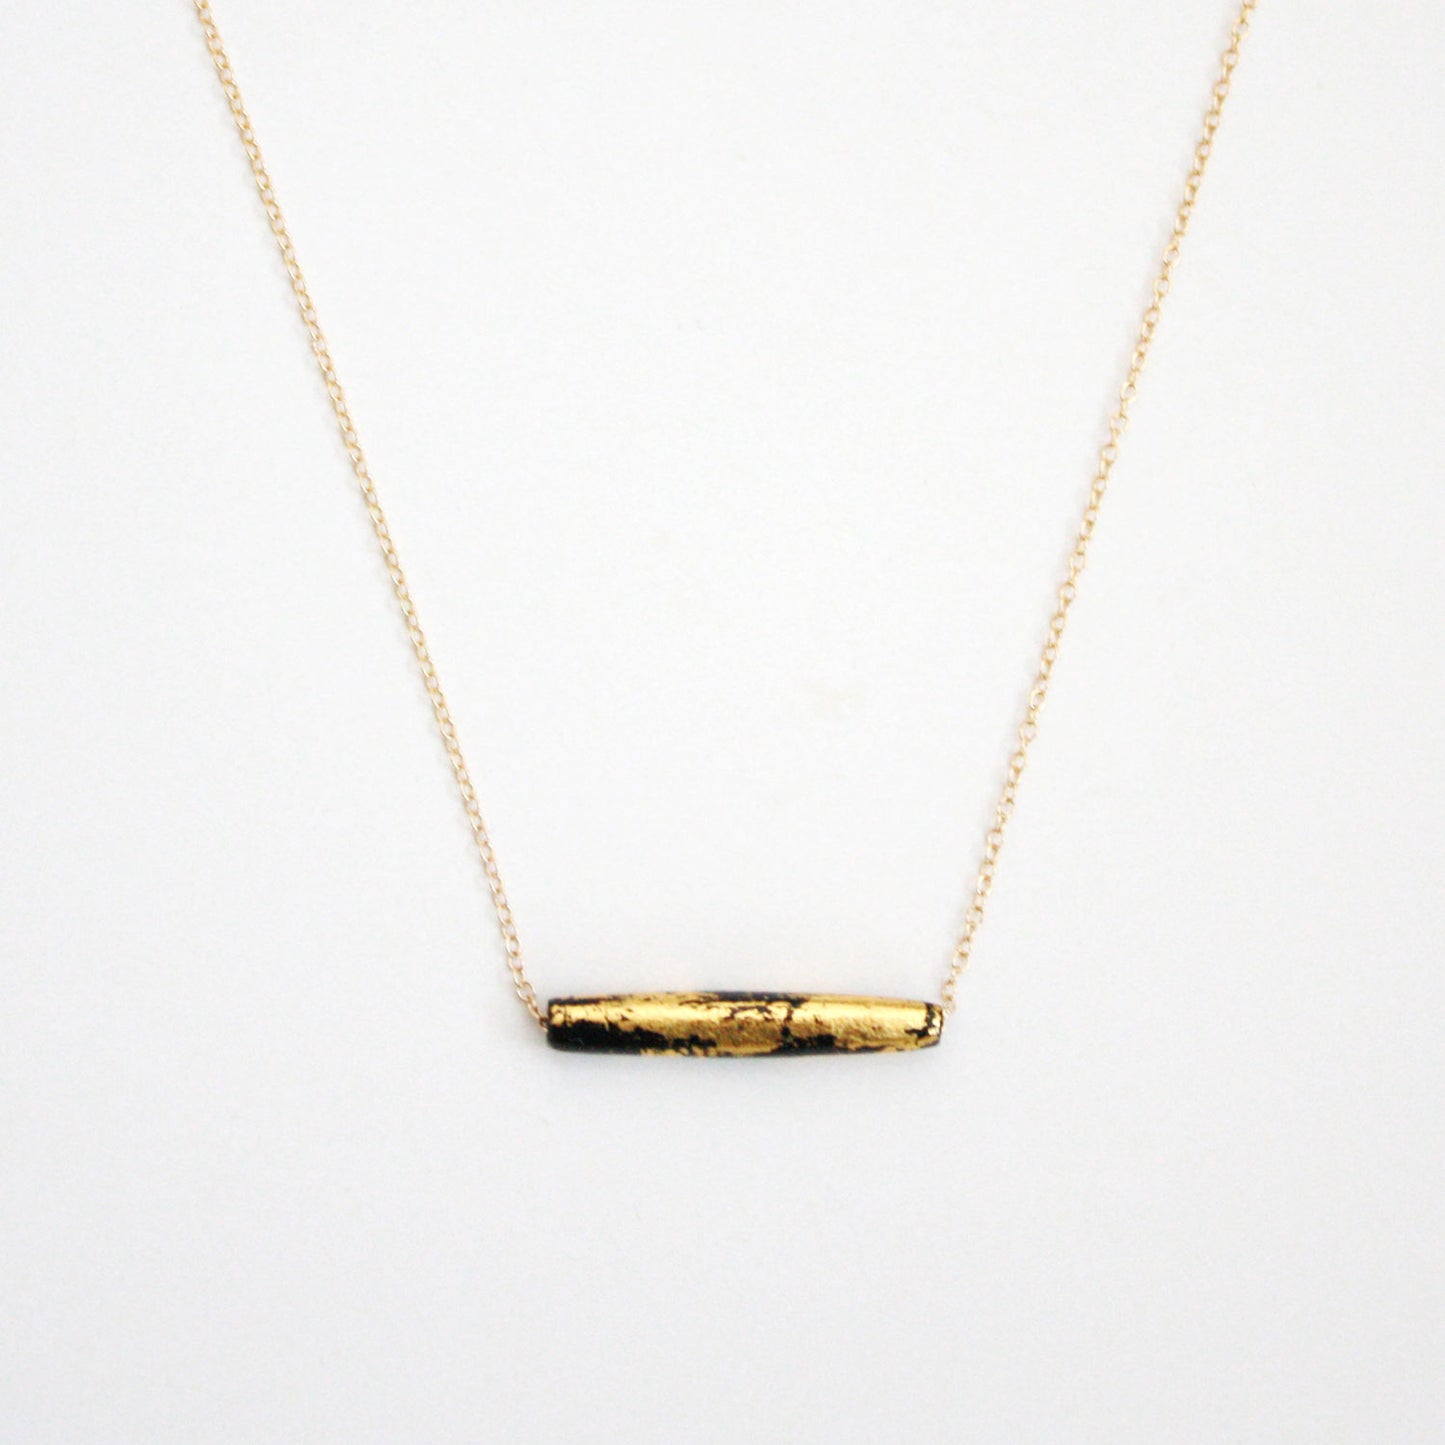 Gold Leaf Necklace - Black Tube